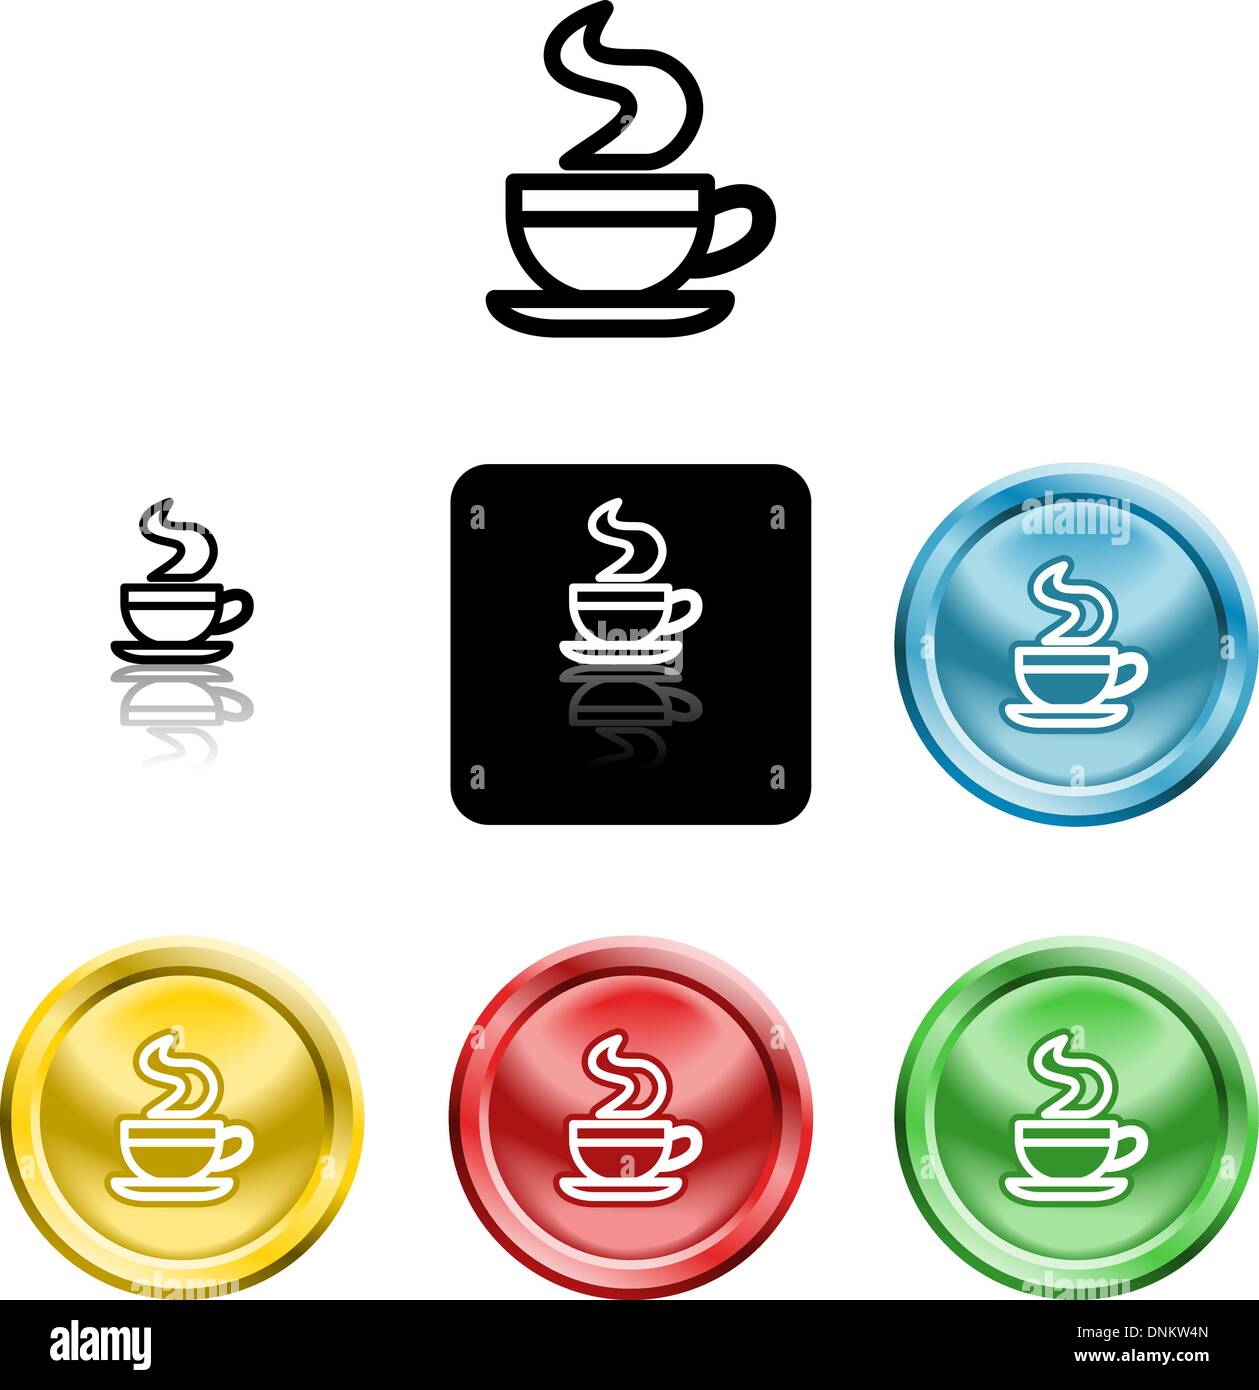 Plusieurs versions d'une icône symbole d'une tasse de café stylisé Illustration de Vecteur